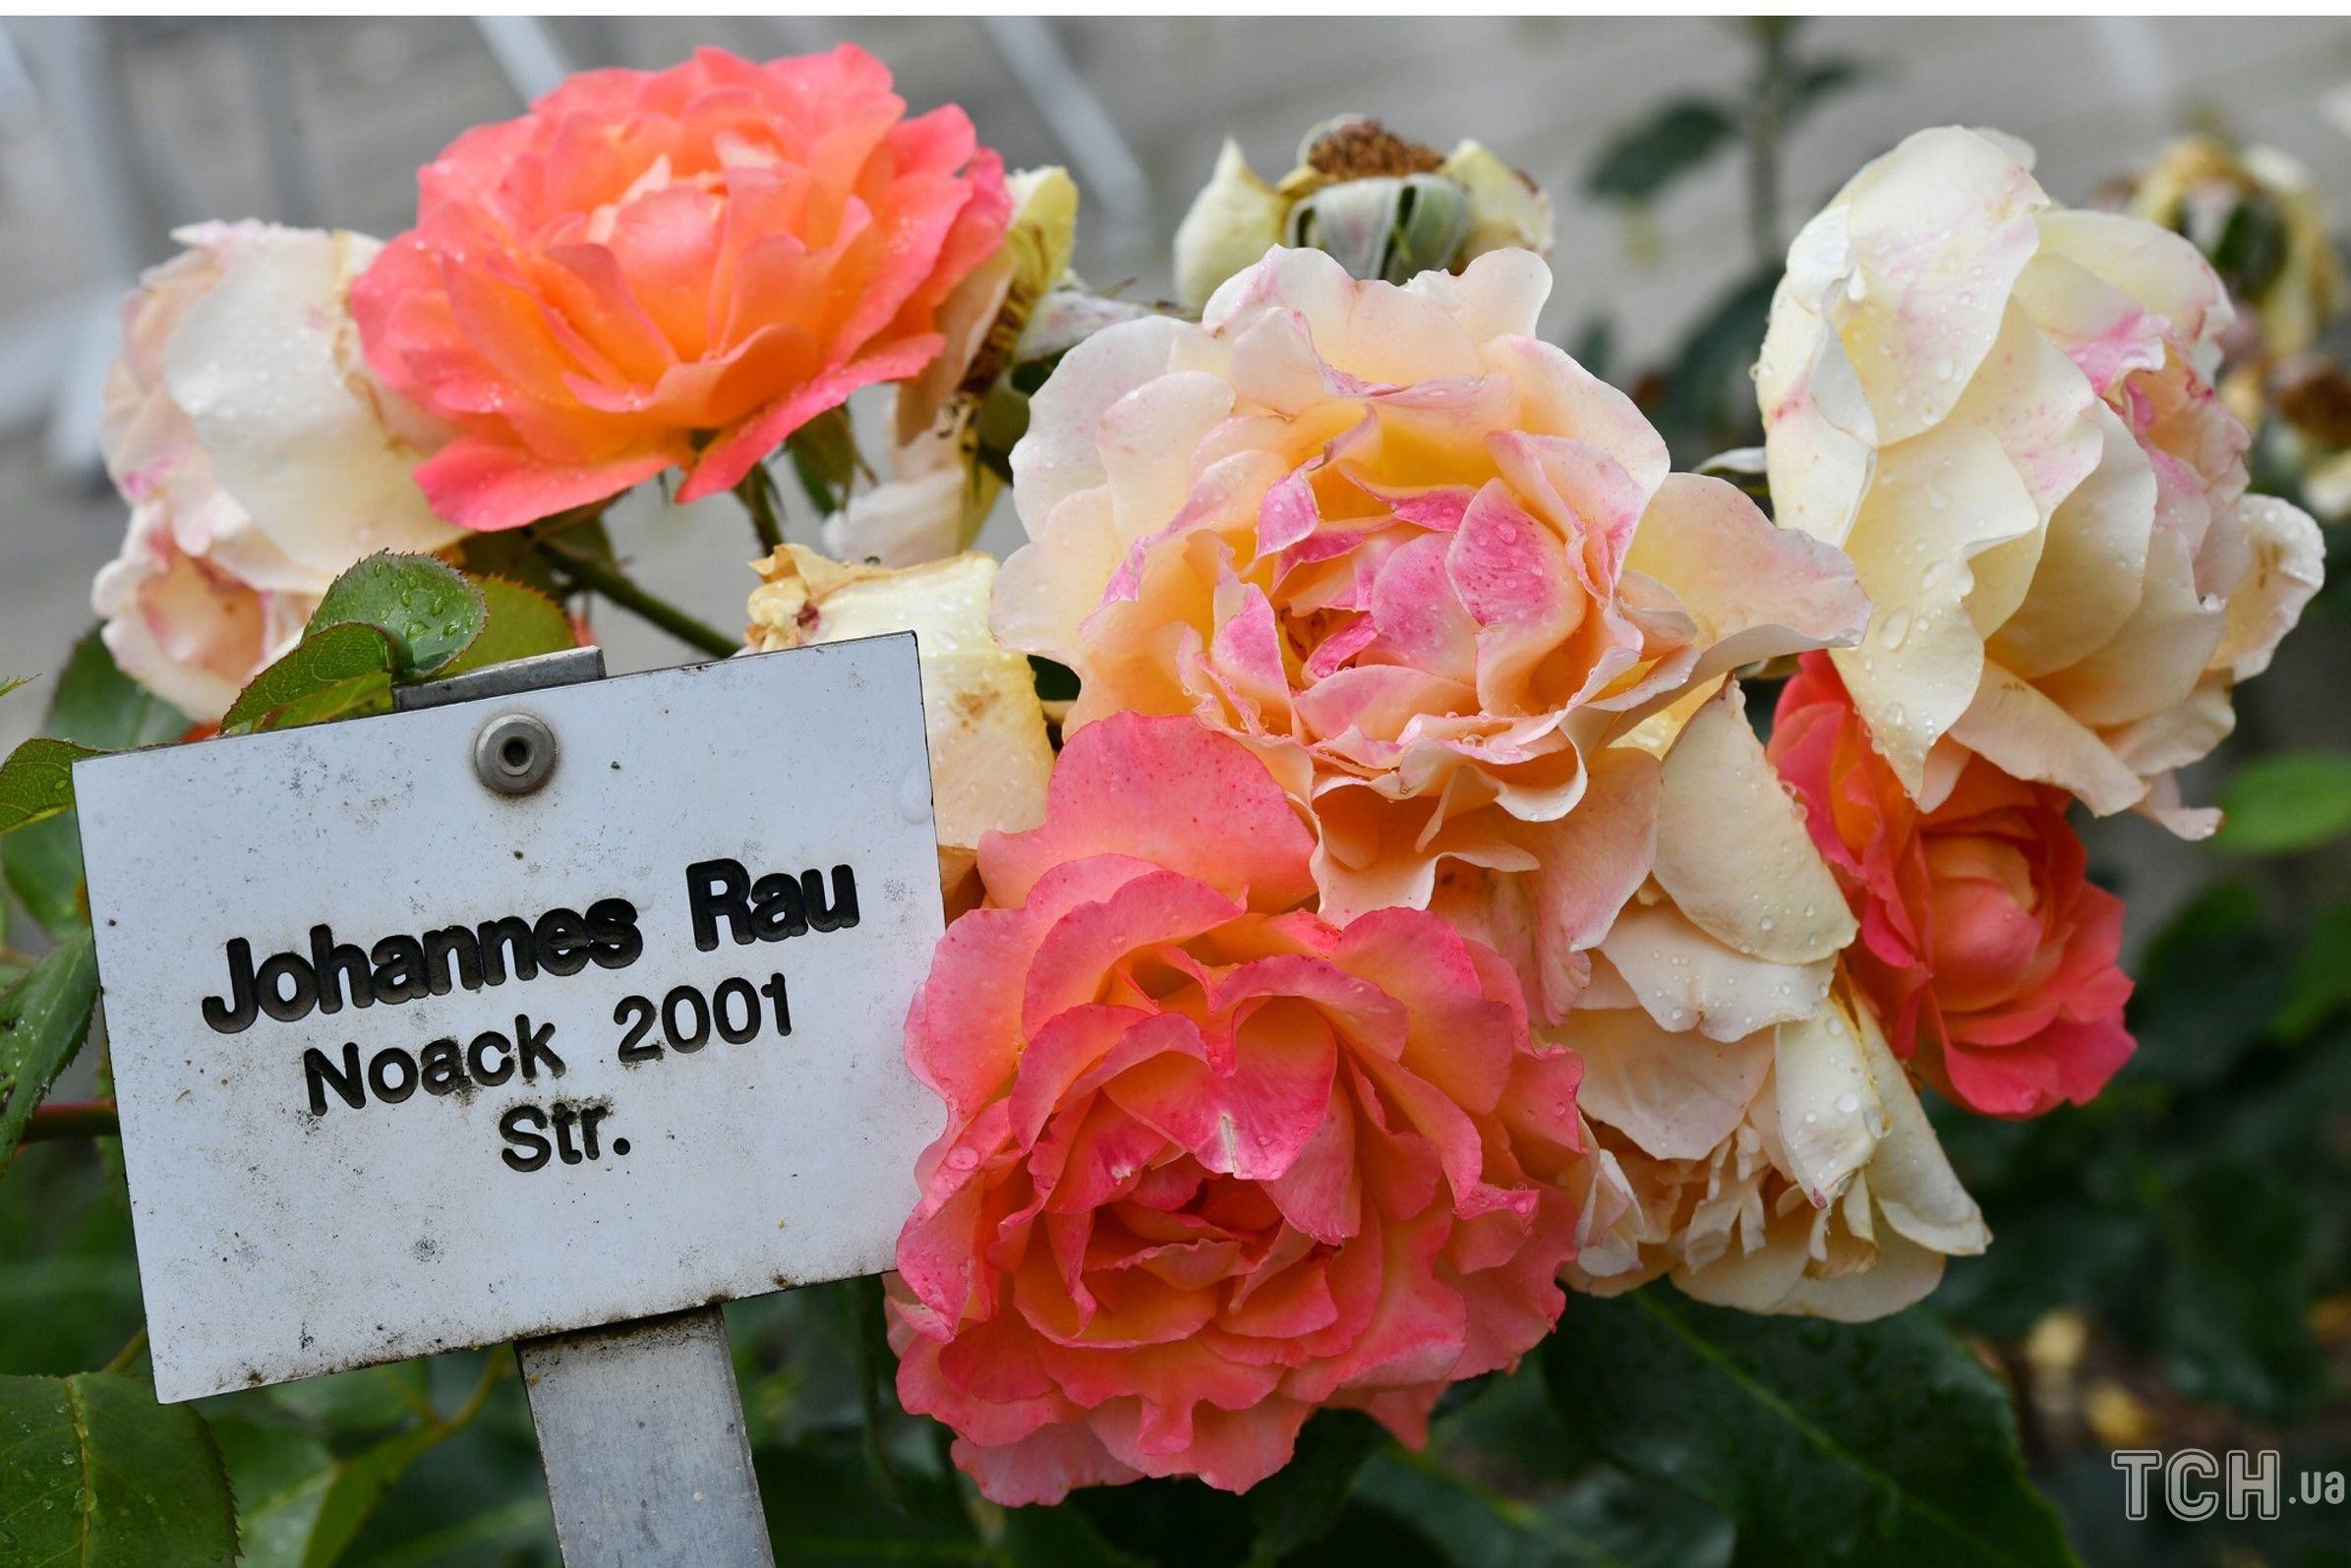 Сорта роз, названые в честь знаменитых личностей дача,знаменитости,сад и огород,садоводство,цветоводство